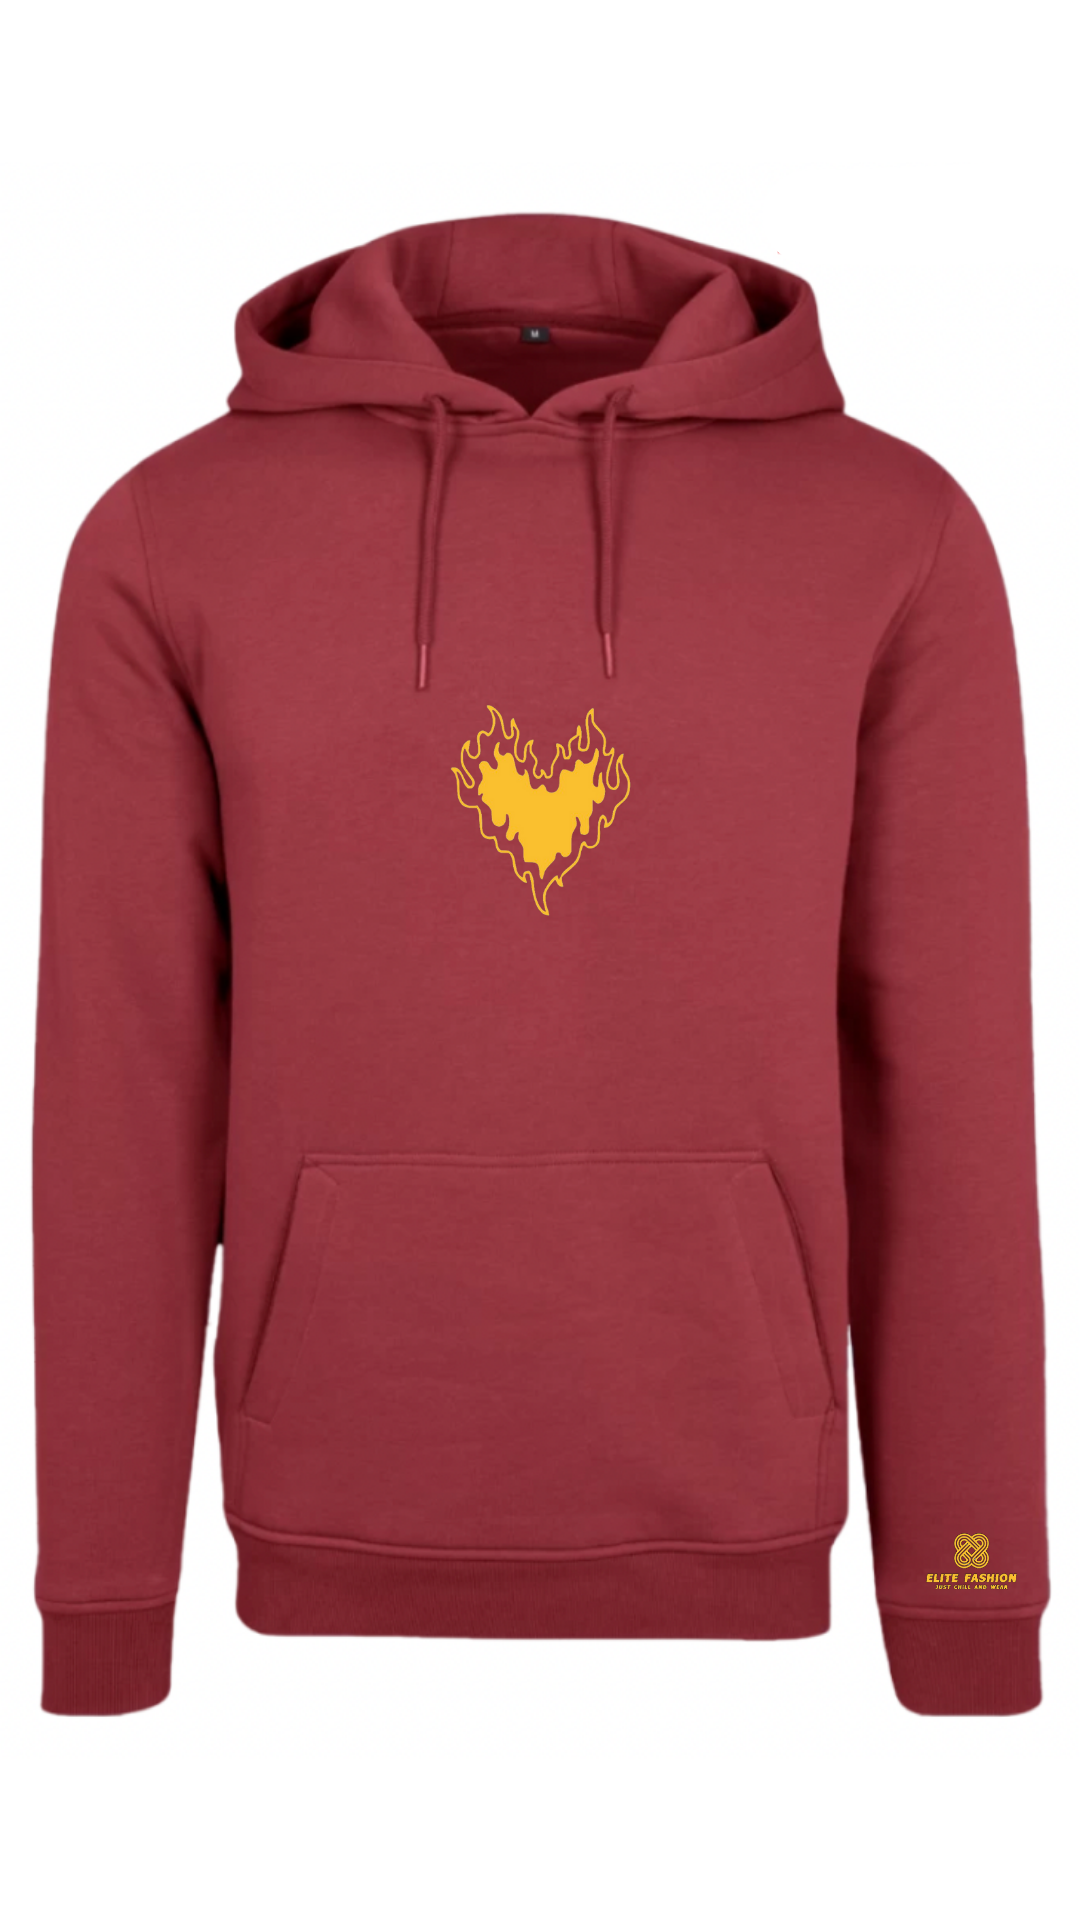 Heart-love hoodie dark red